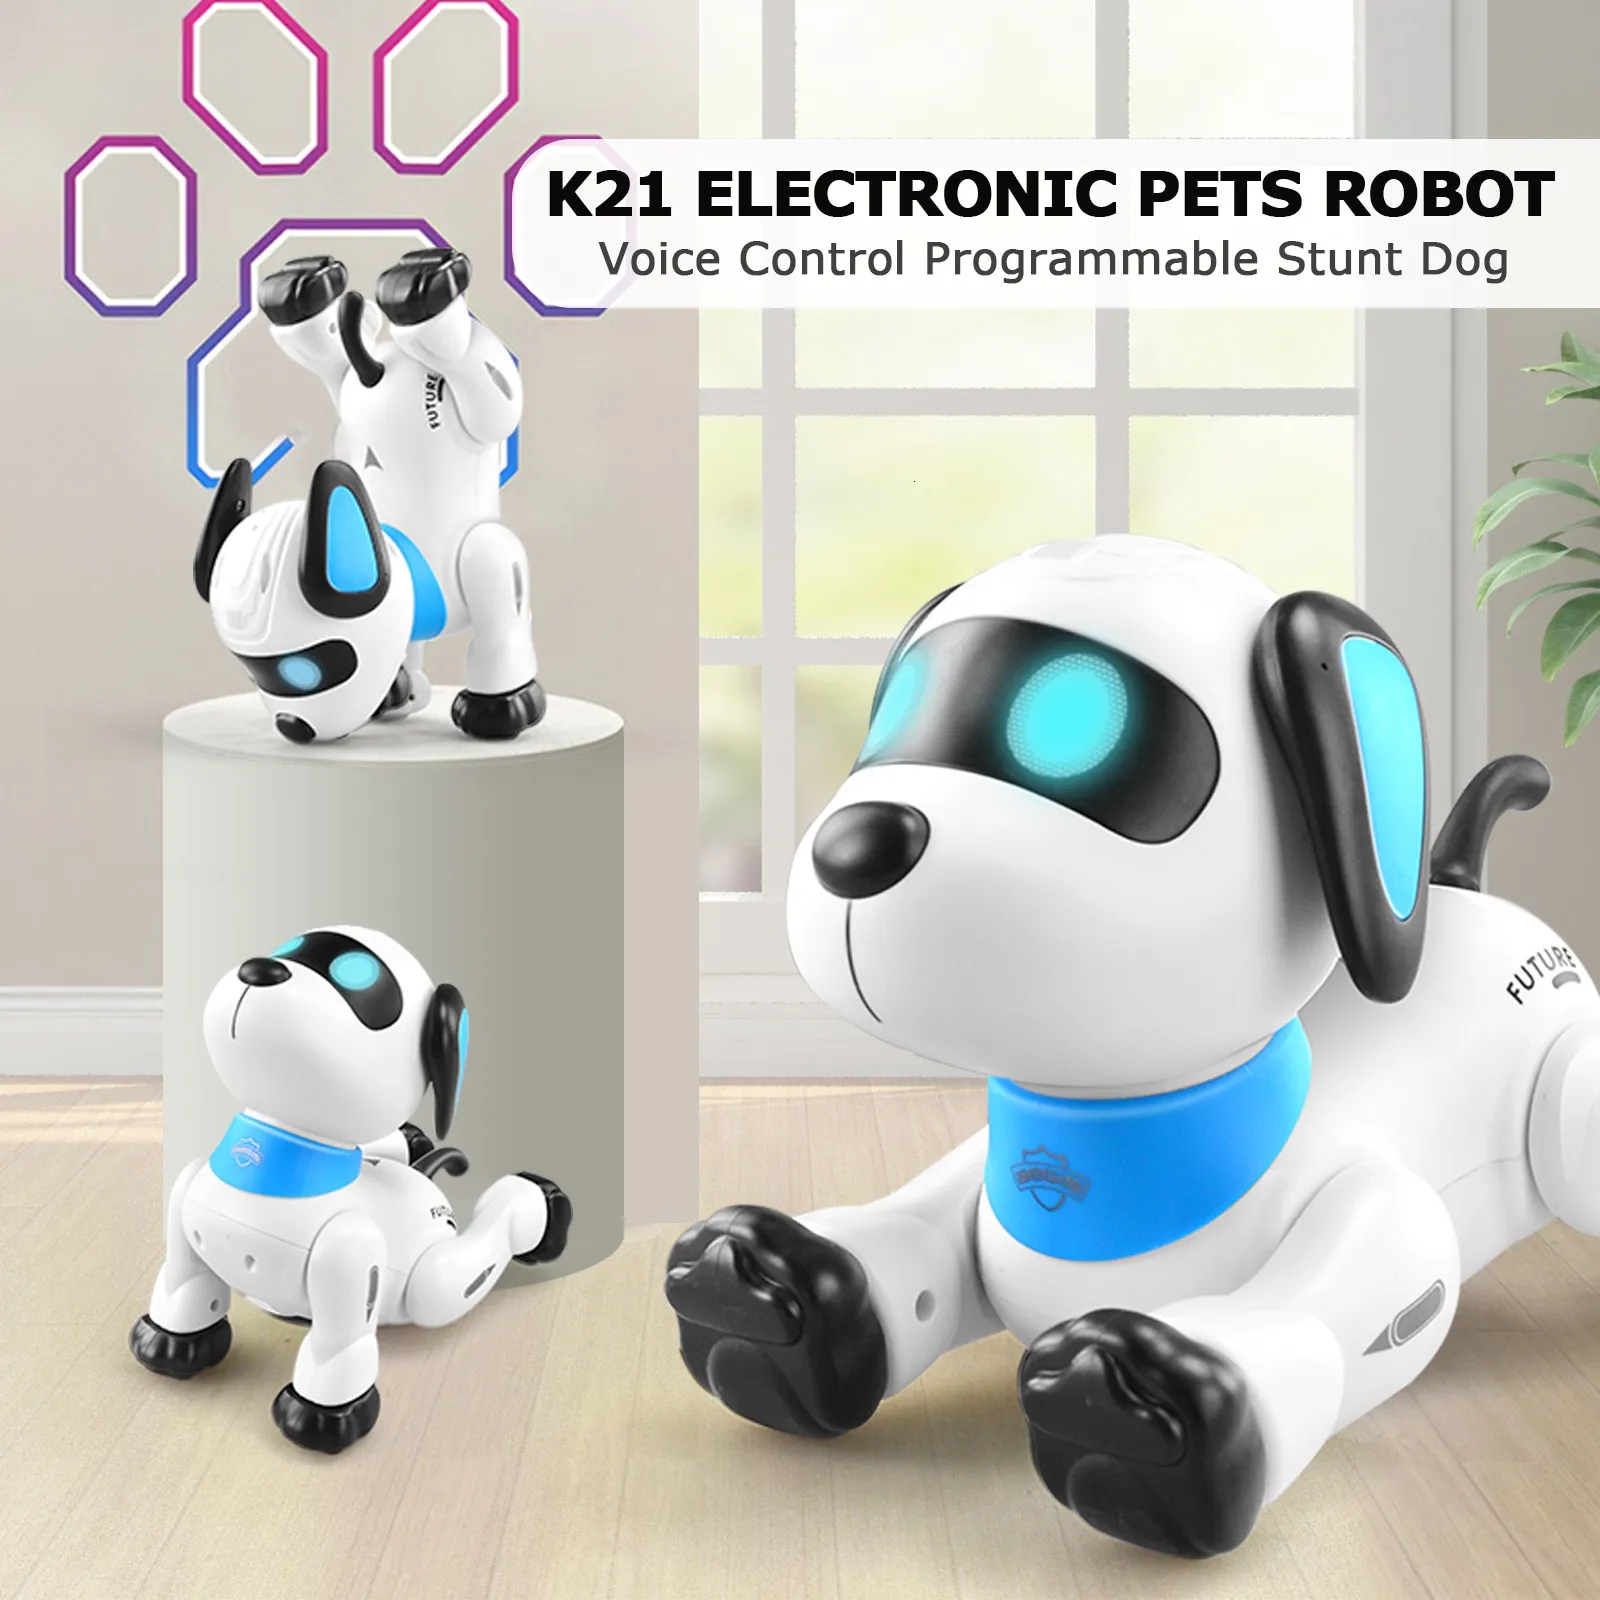 Electric/RC Animals le neng K21 إلكترونية روبوت الكلب ستونت الكلب التحكم عن بُعد روبوت لعبة الكلب التحكم الصوتي في التصويت باللمس.